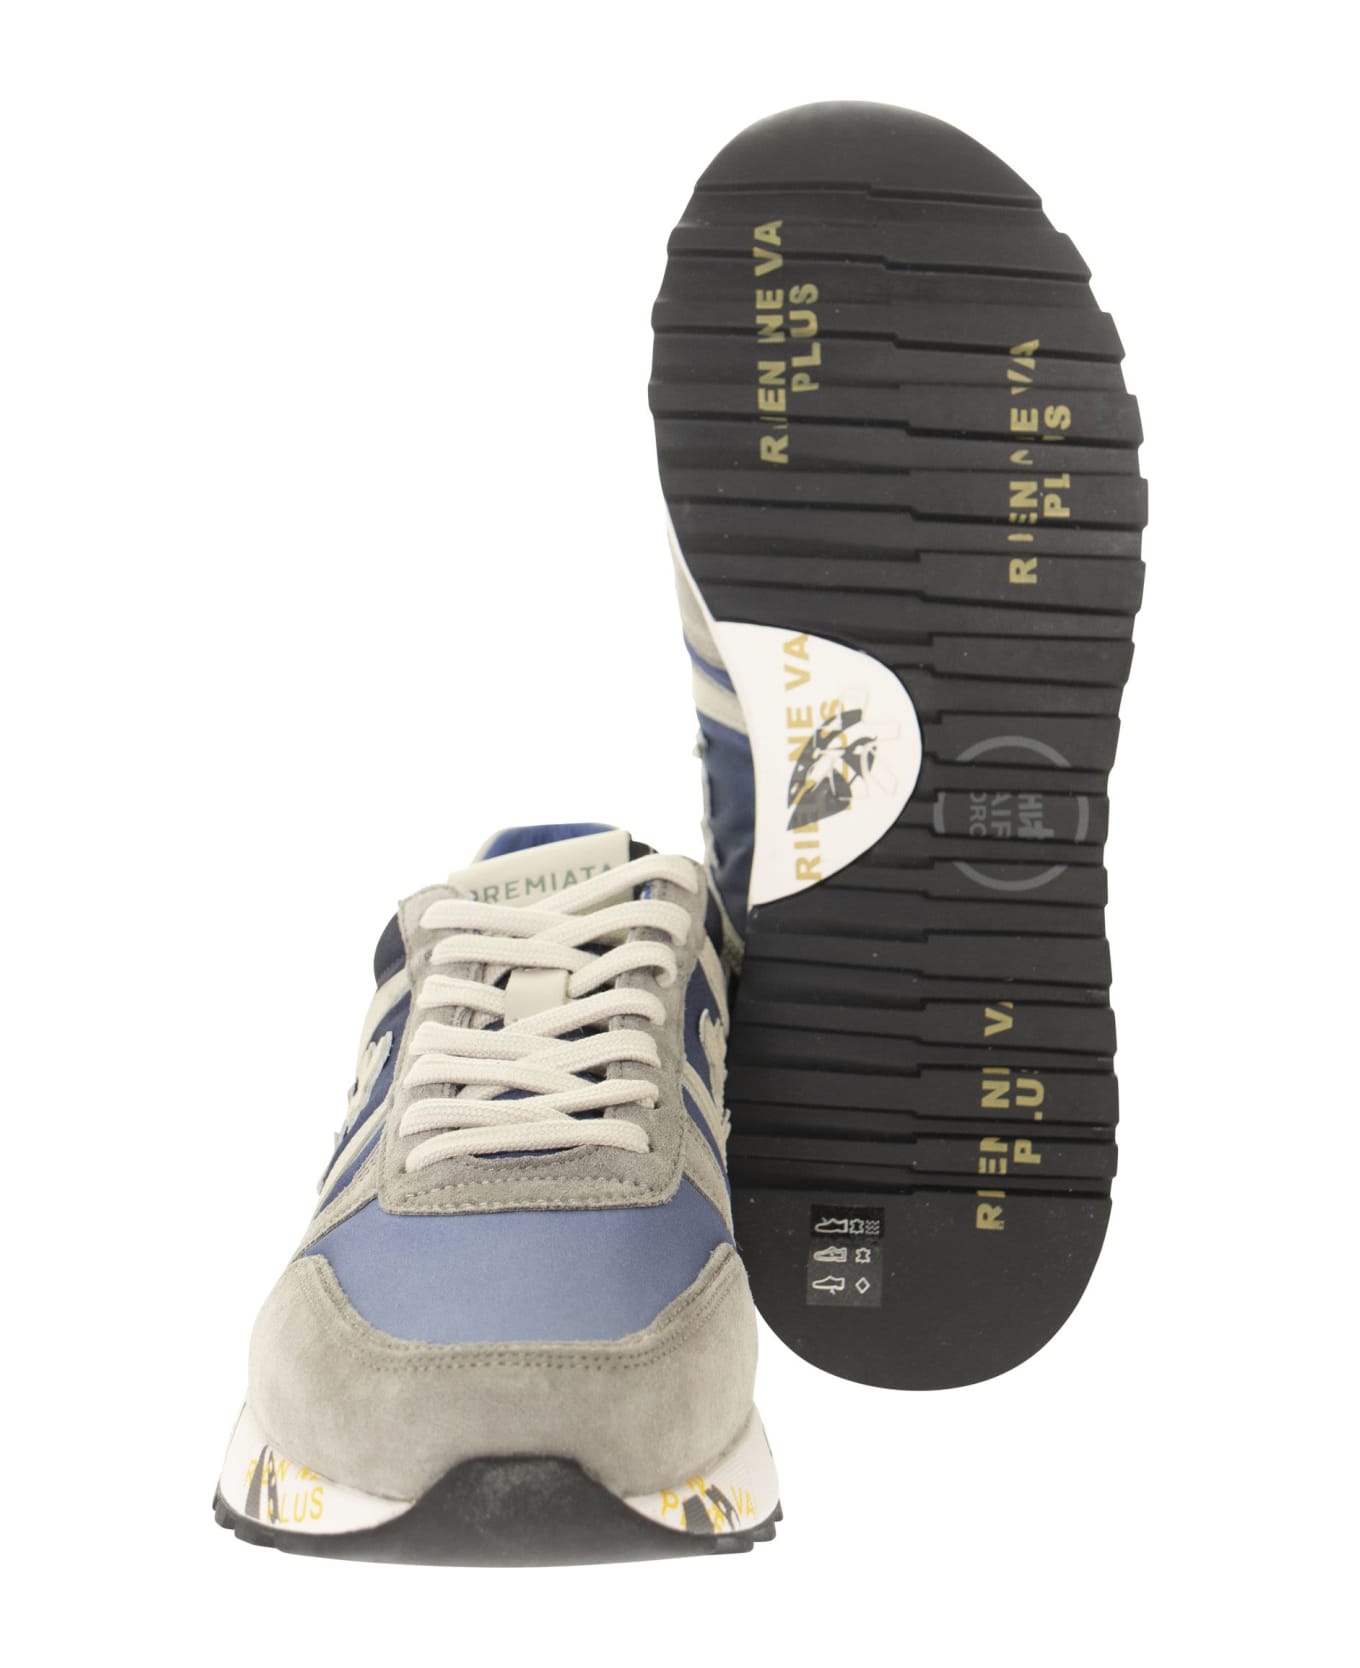 Premiata Lander 4587 Sneakers - Blue/grey